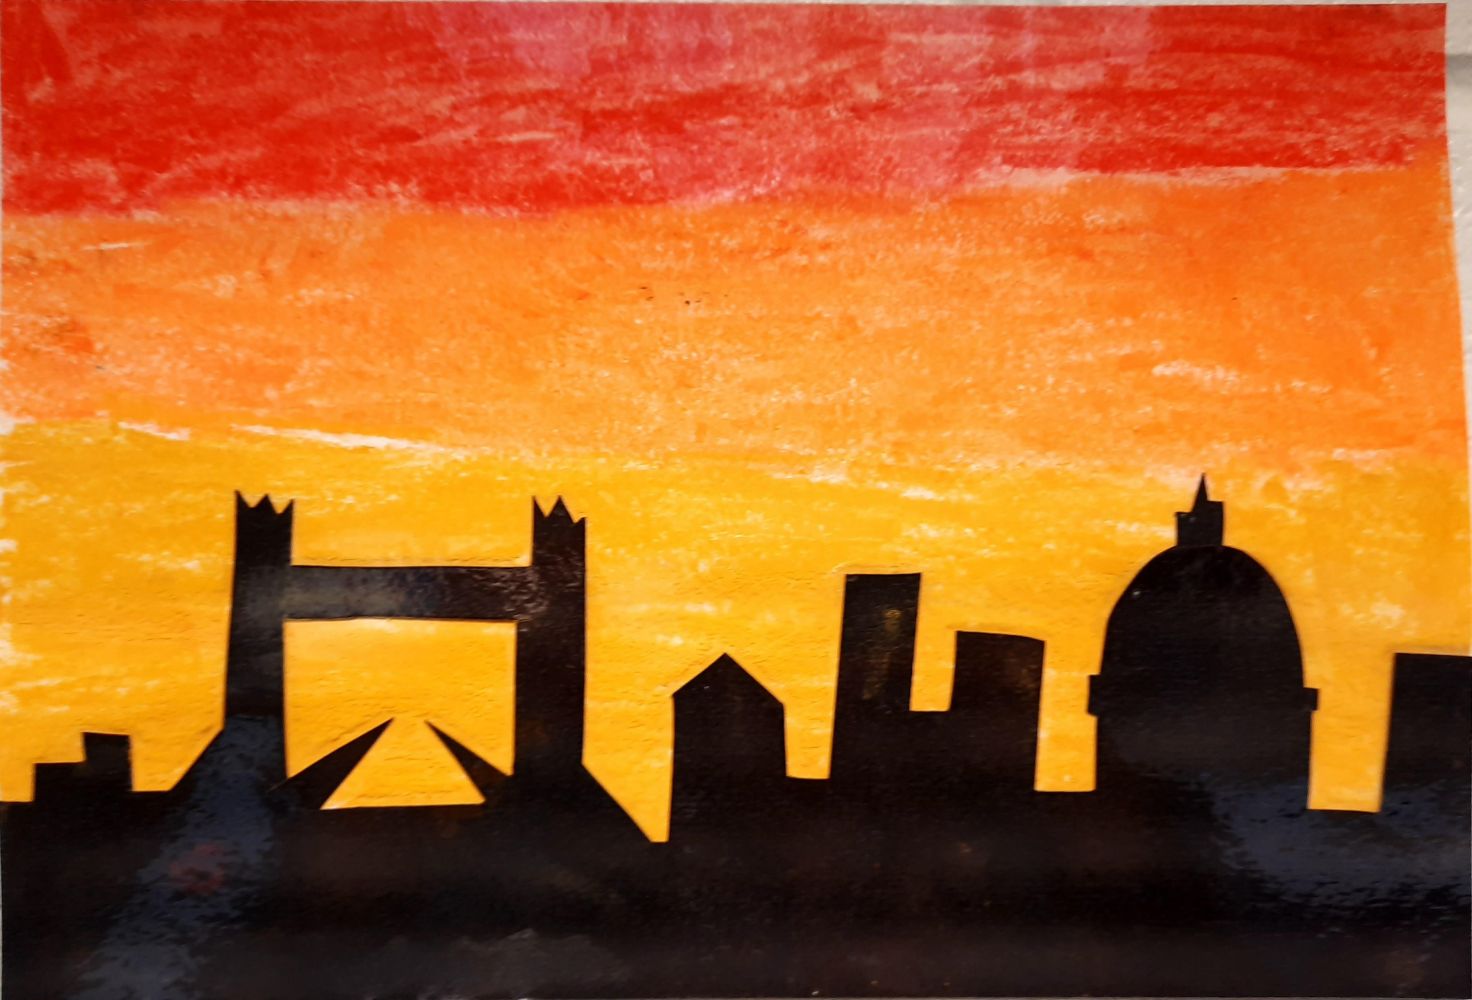 London skyline painting